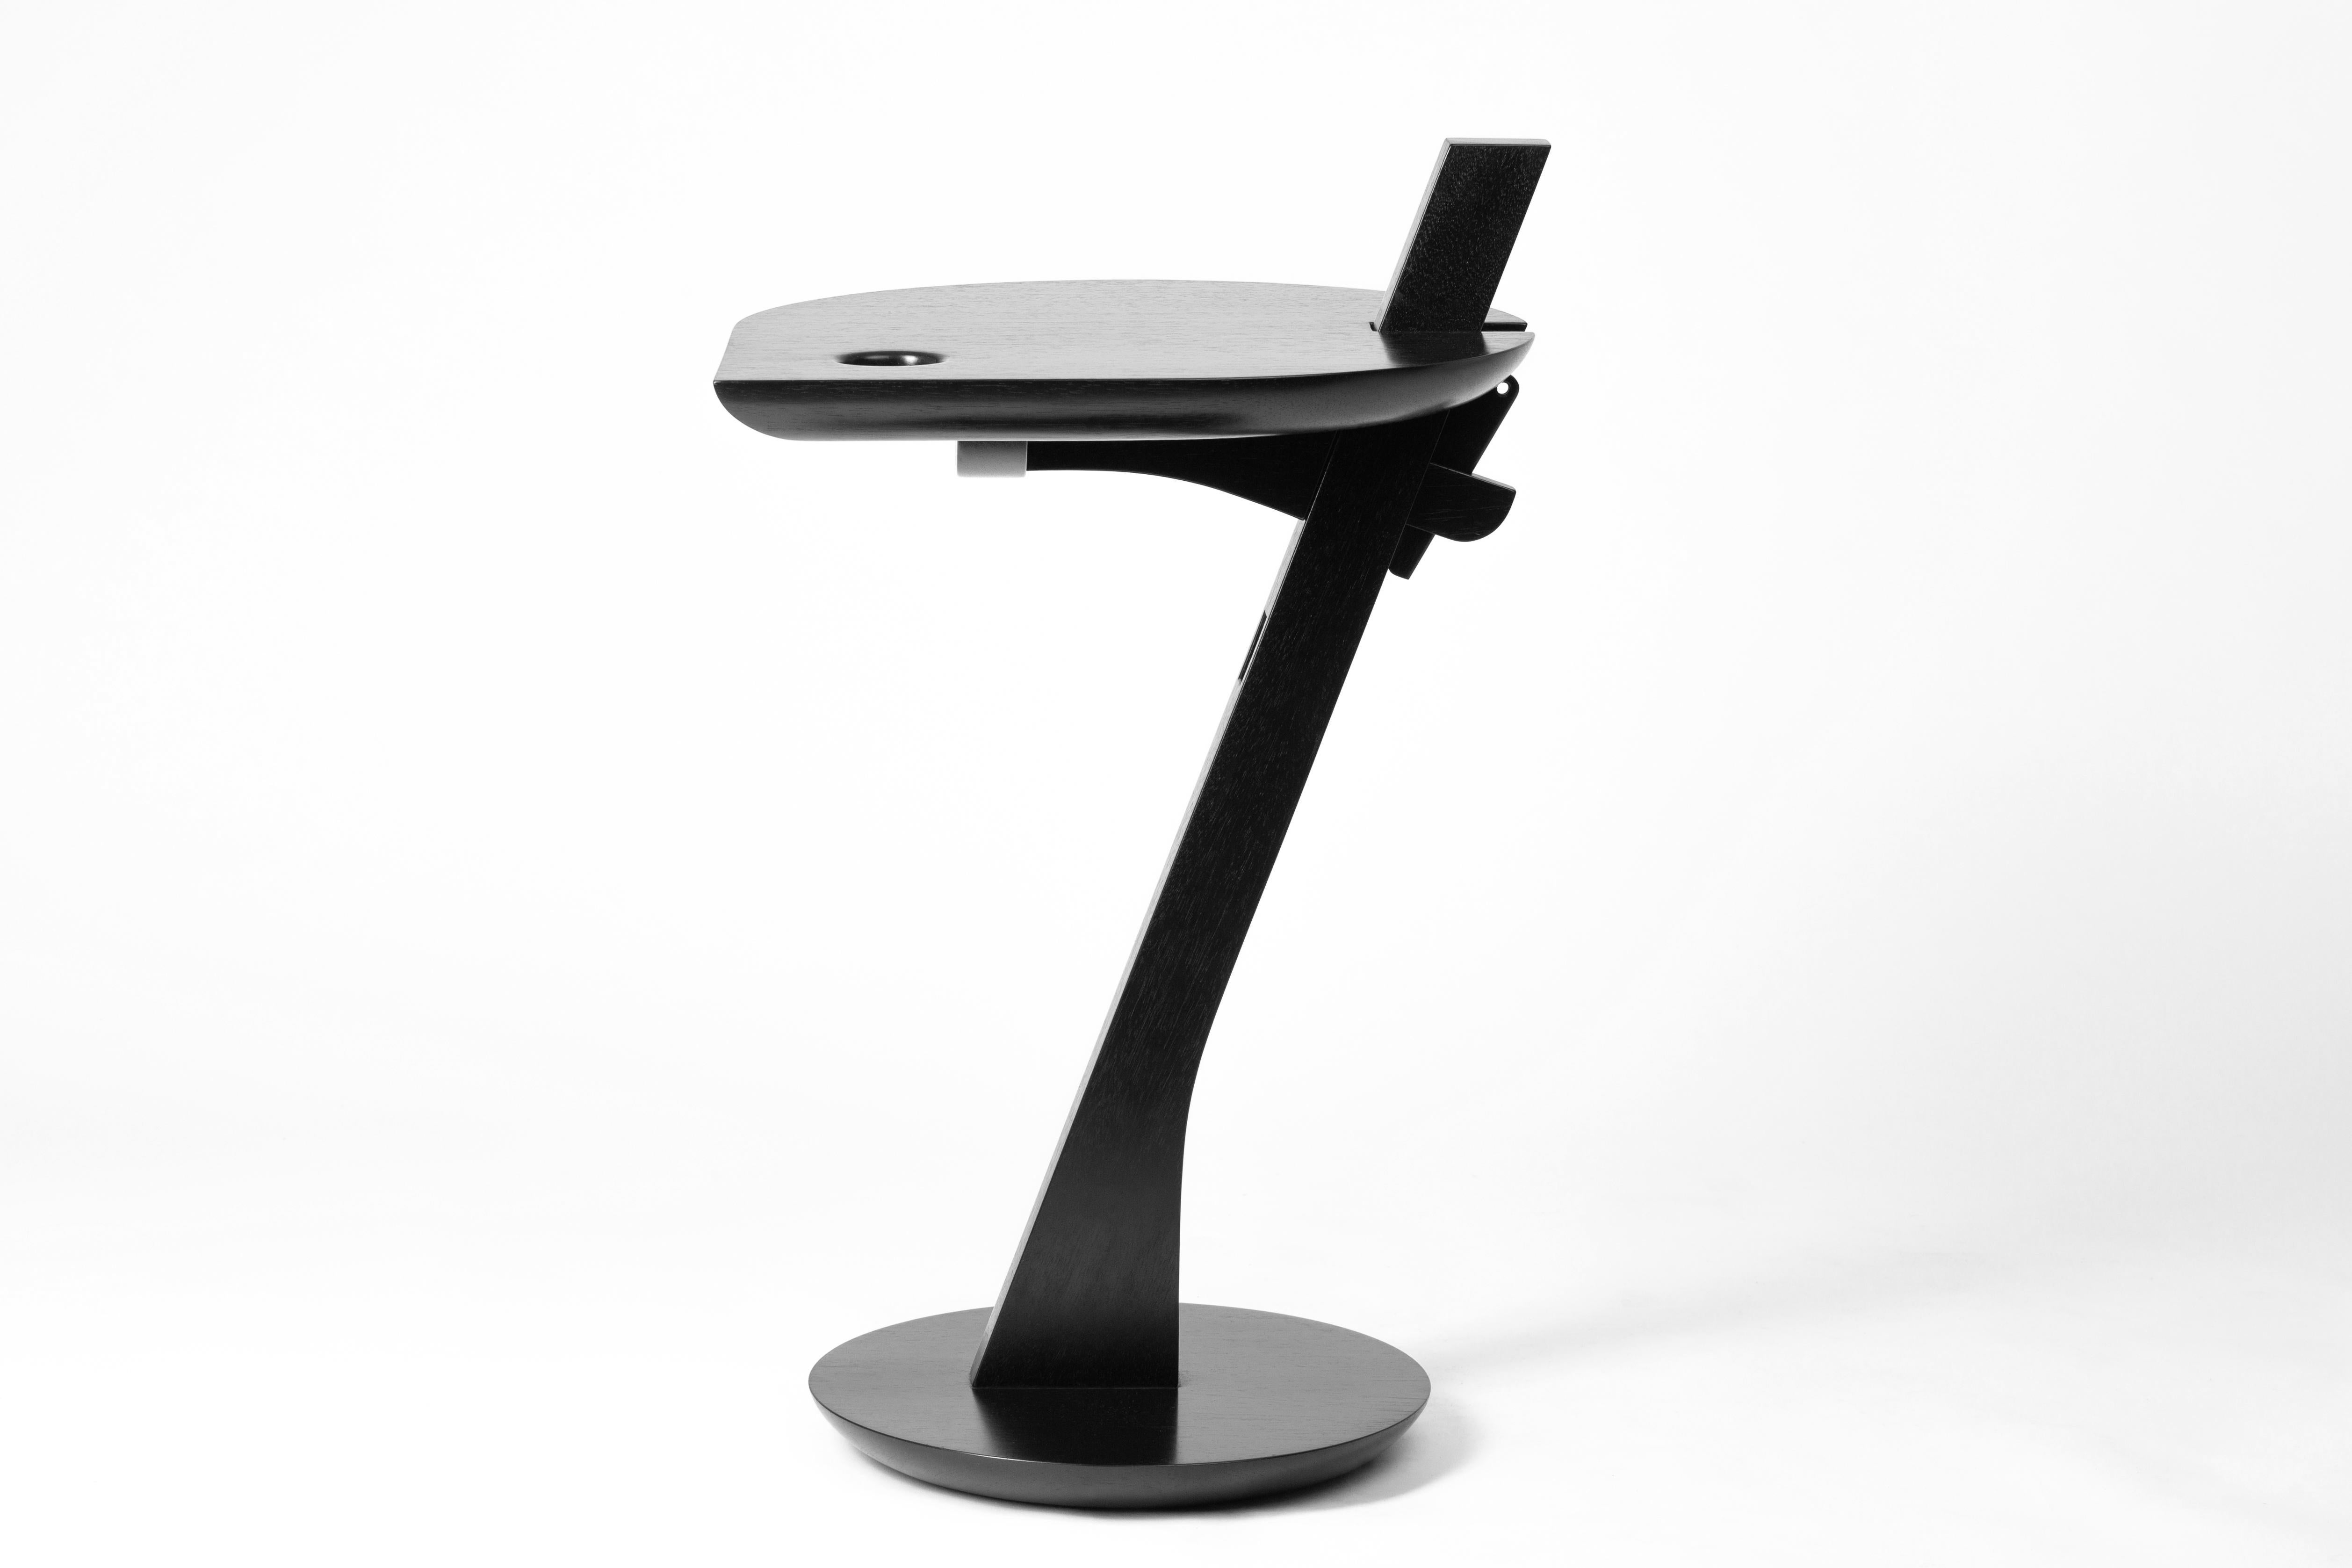 Mit seinem zeitgenössischen Design und seinen kühnen Linien ist der Iracema Beistelltisch vom Saci-Stuhl des Meisters Morito Ebine inspiriert.

Der Iracema-Tisch wird aus Massivholz mit traditionellen Holzbearbeitungstechniken handgefertigt und